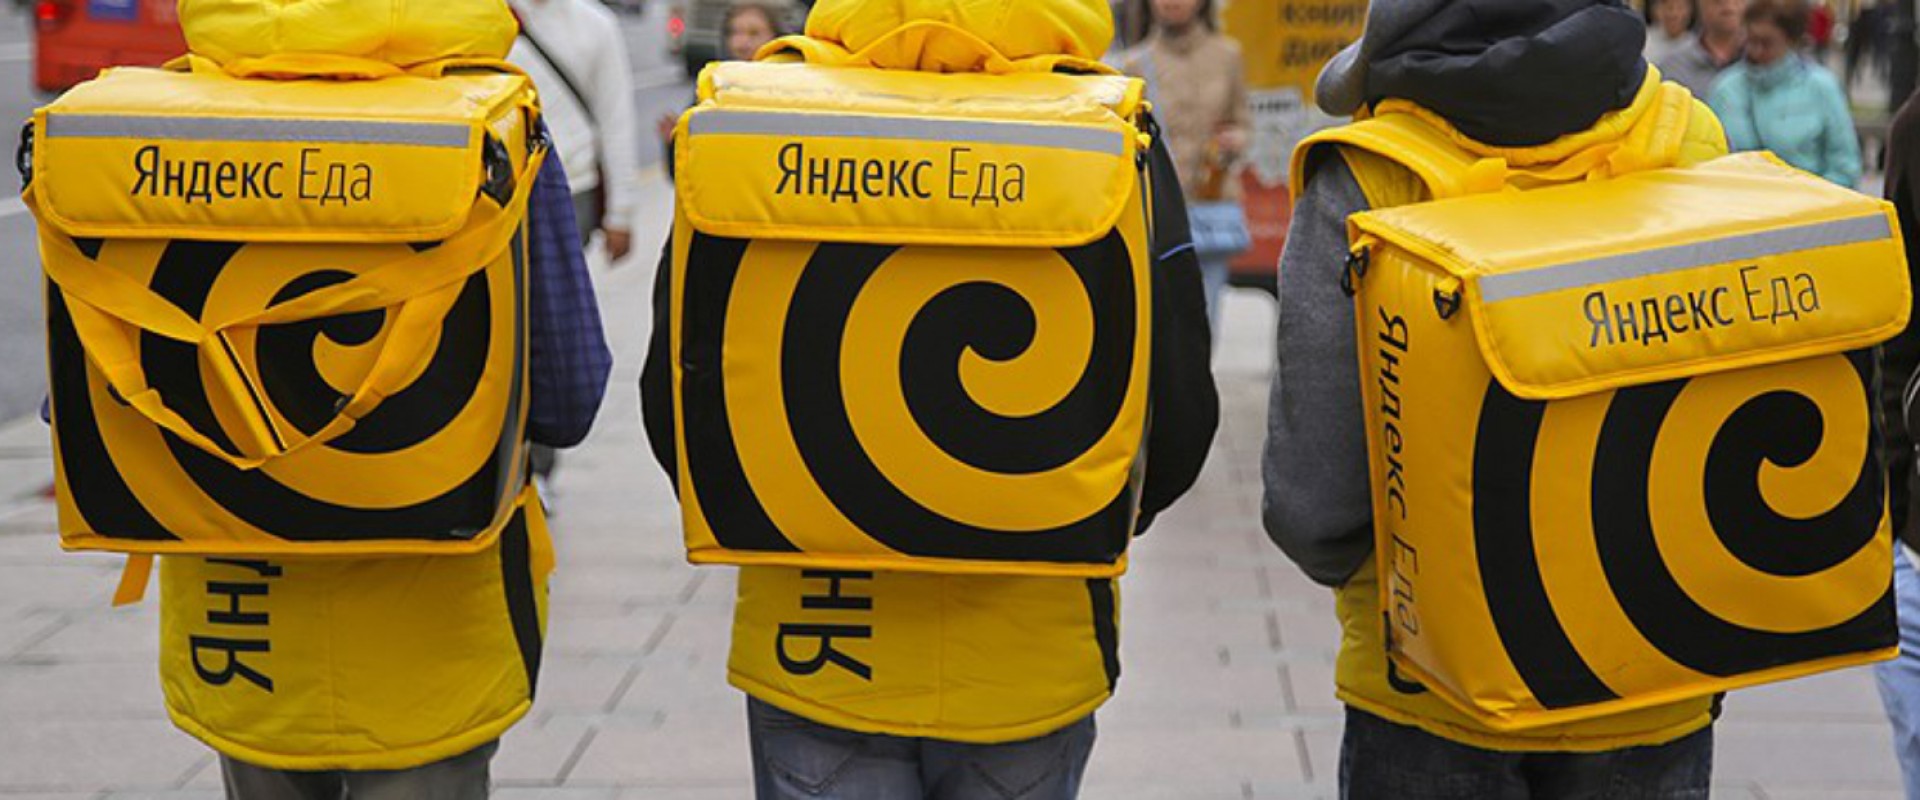 Про «клоны» в «Яндекс. Еде» и не только